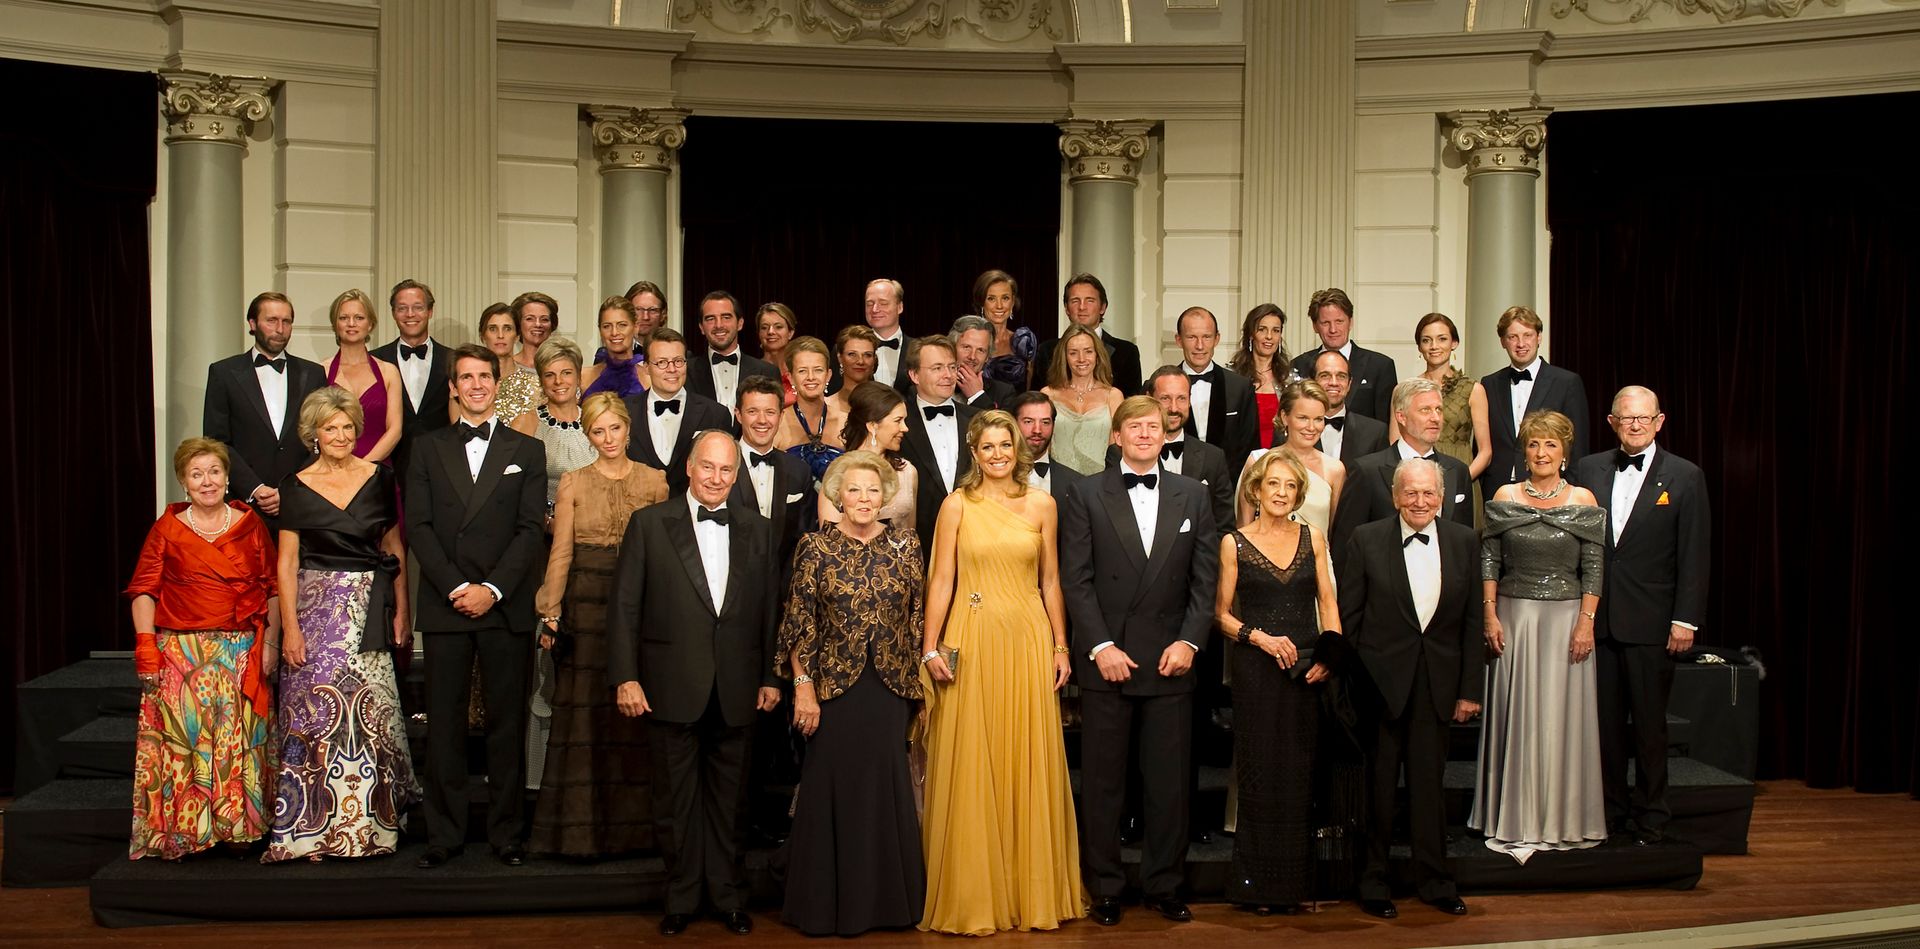 2011: Máxima poseert met al haar gasten in het Concertgebouw in Amsterdam voorafgaand aan het